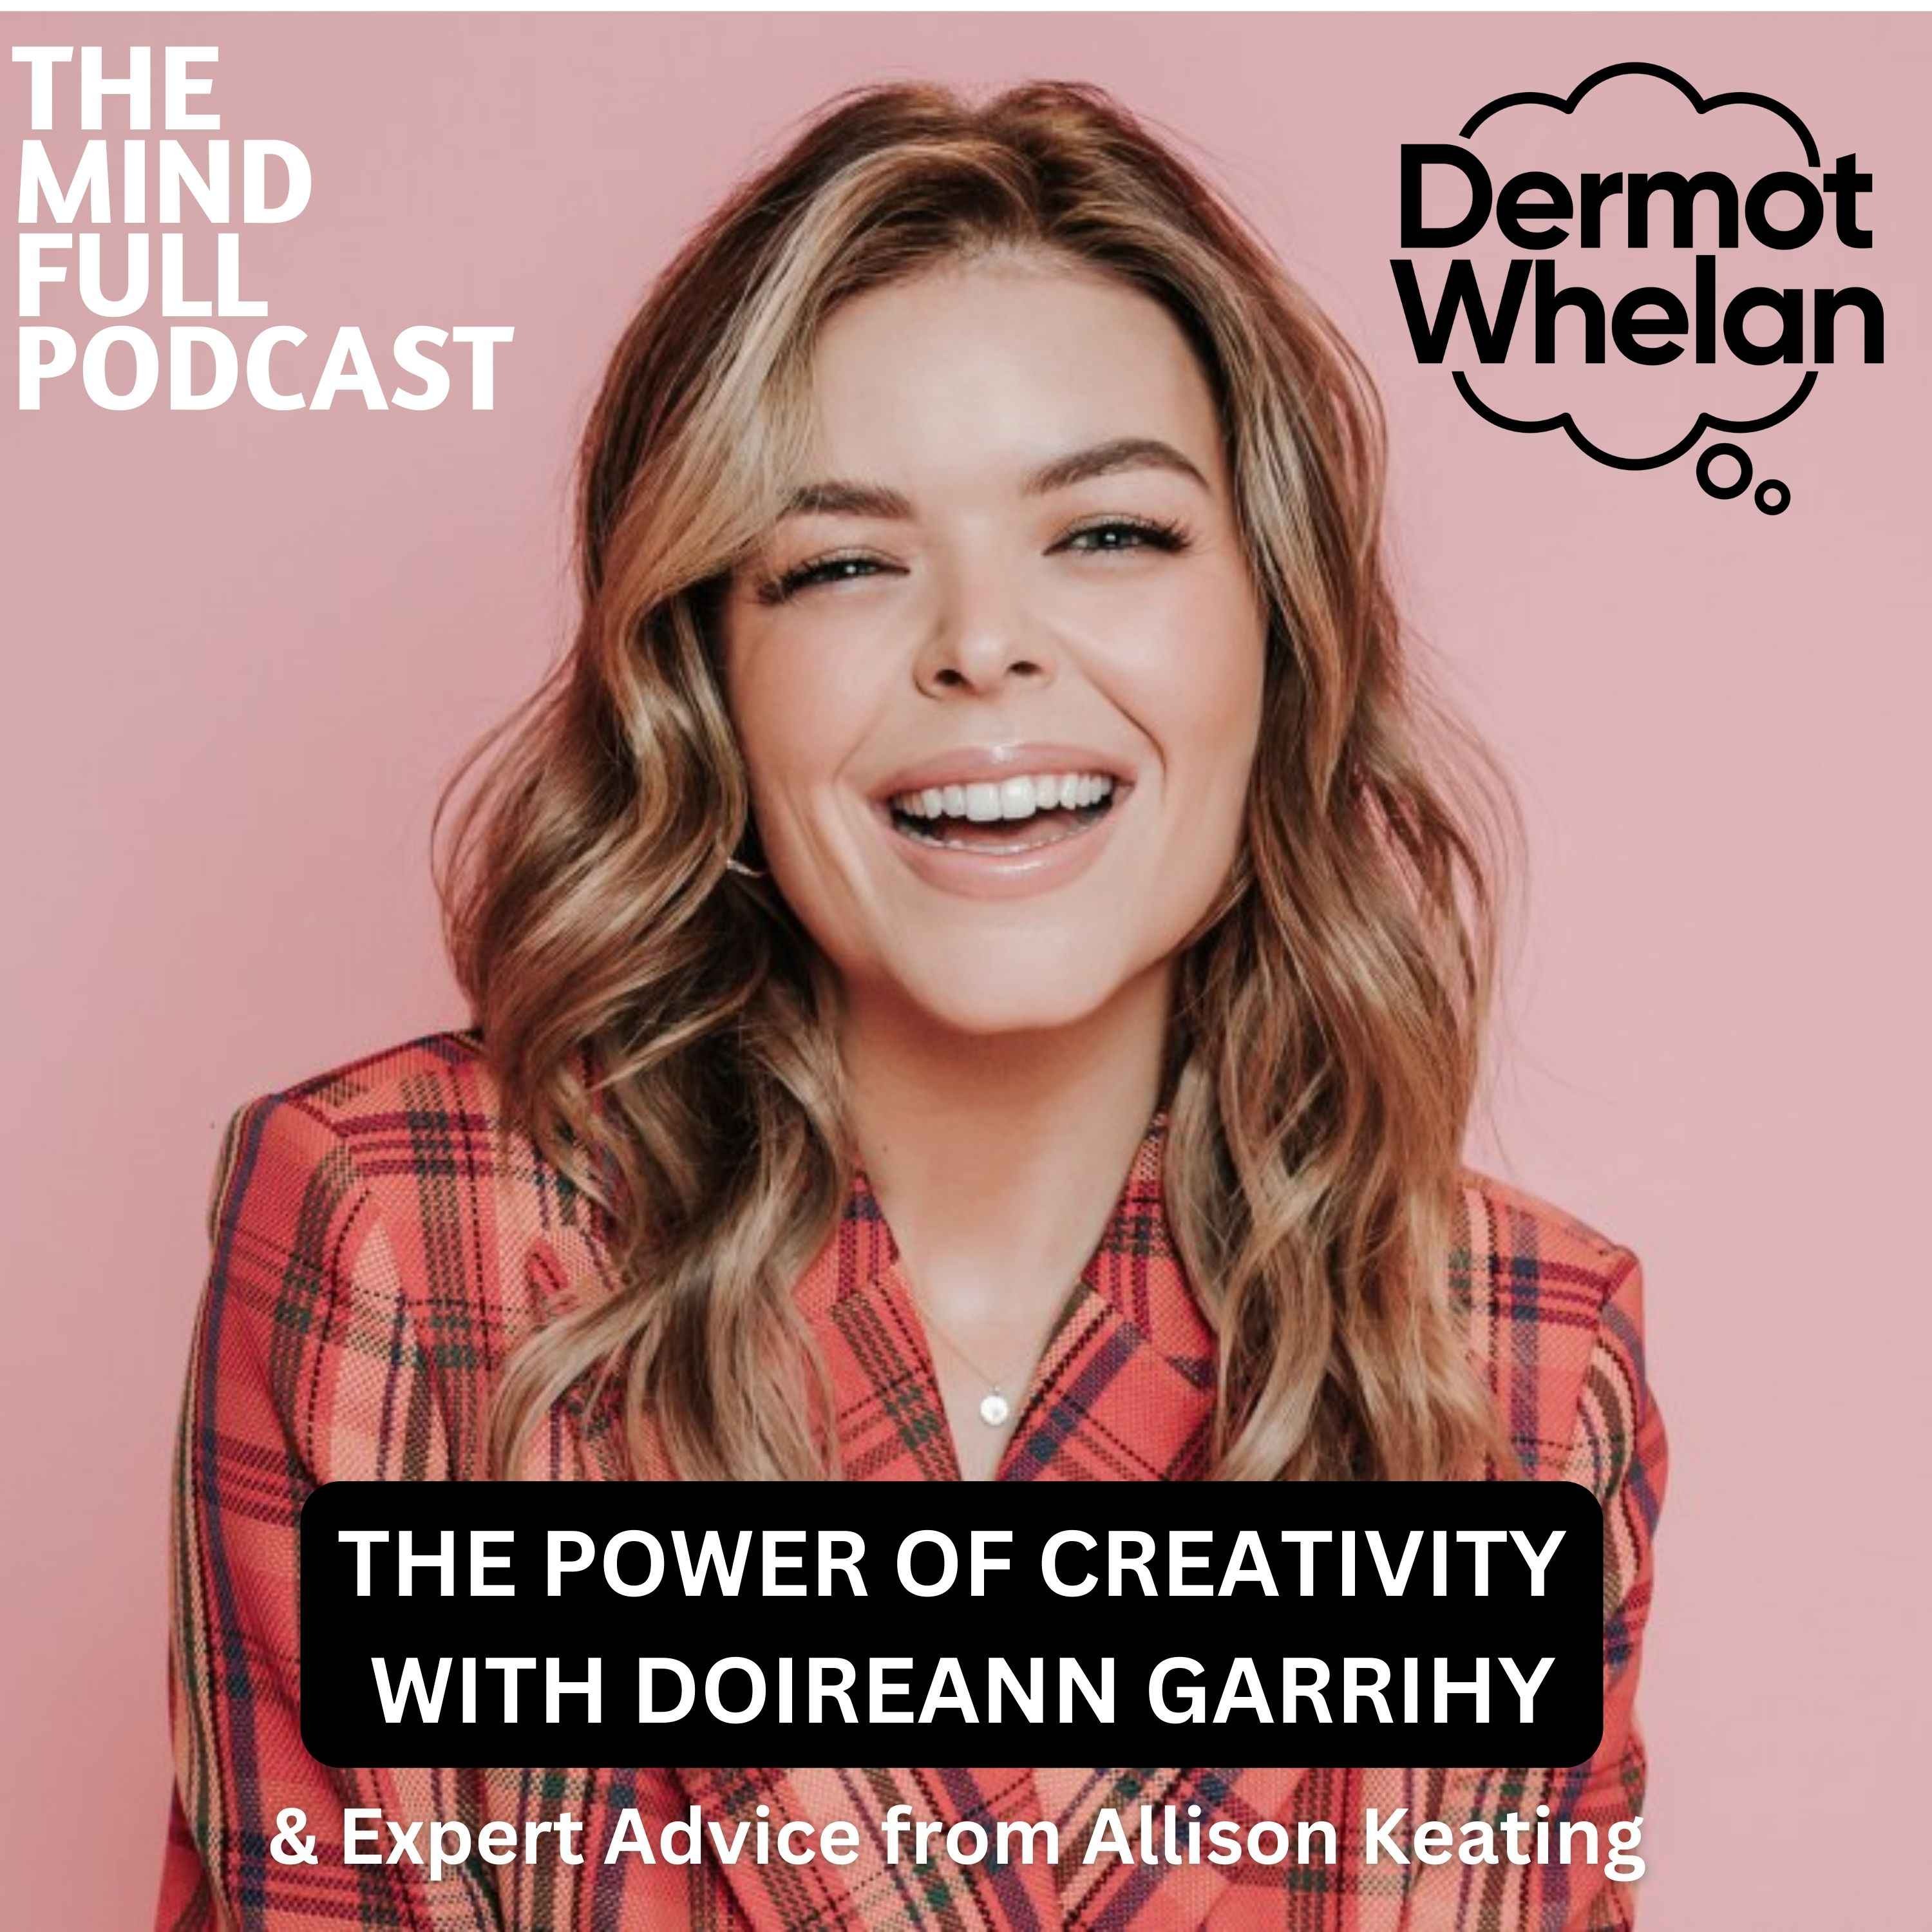 The Power of Creativity with Doireann Garrihy